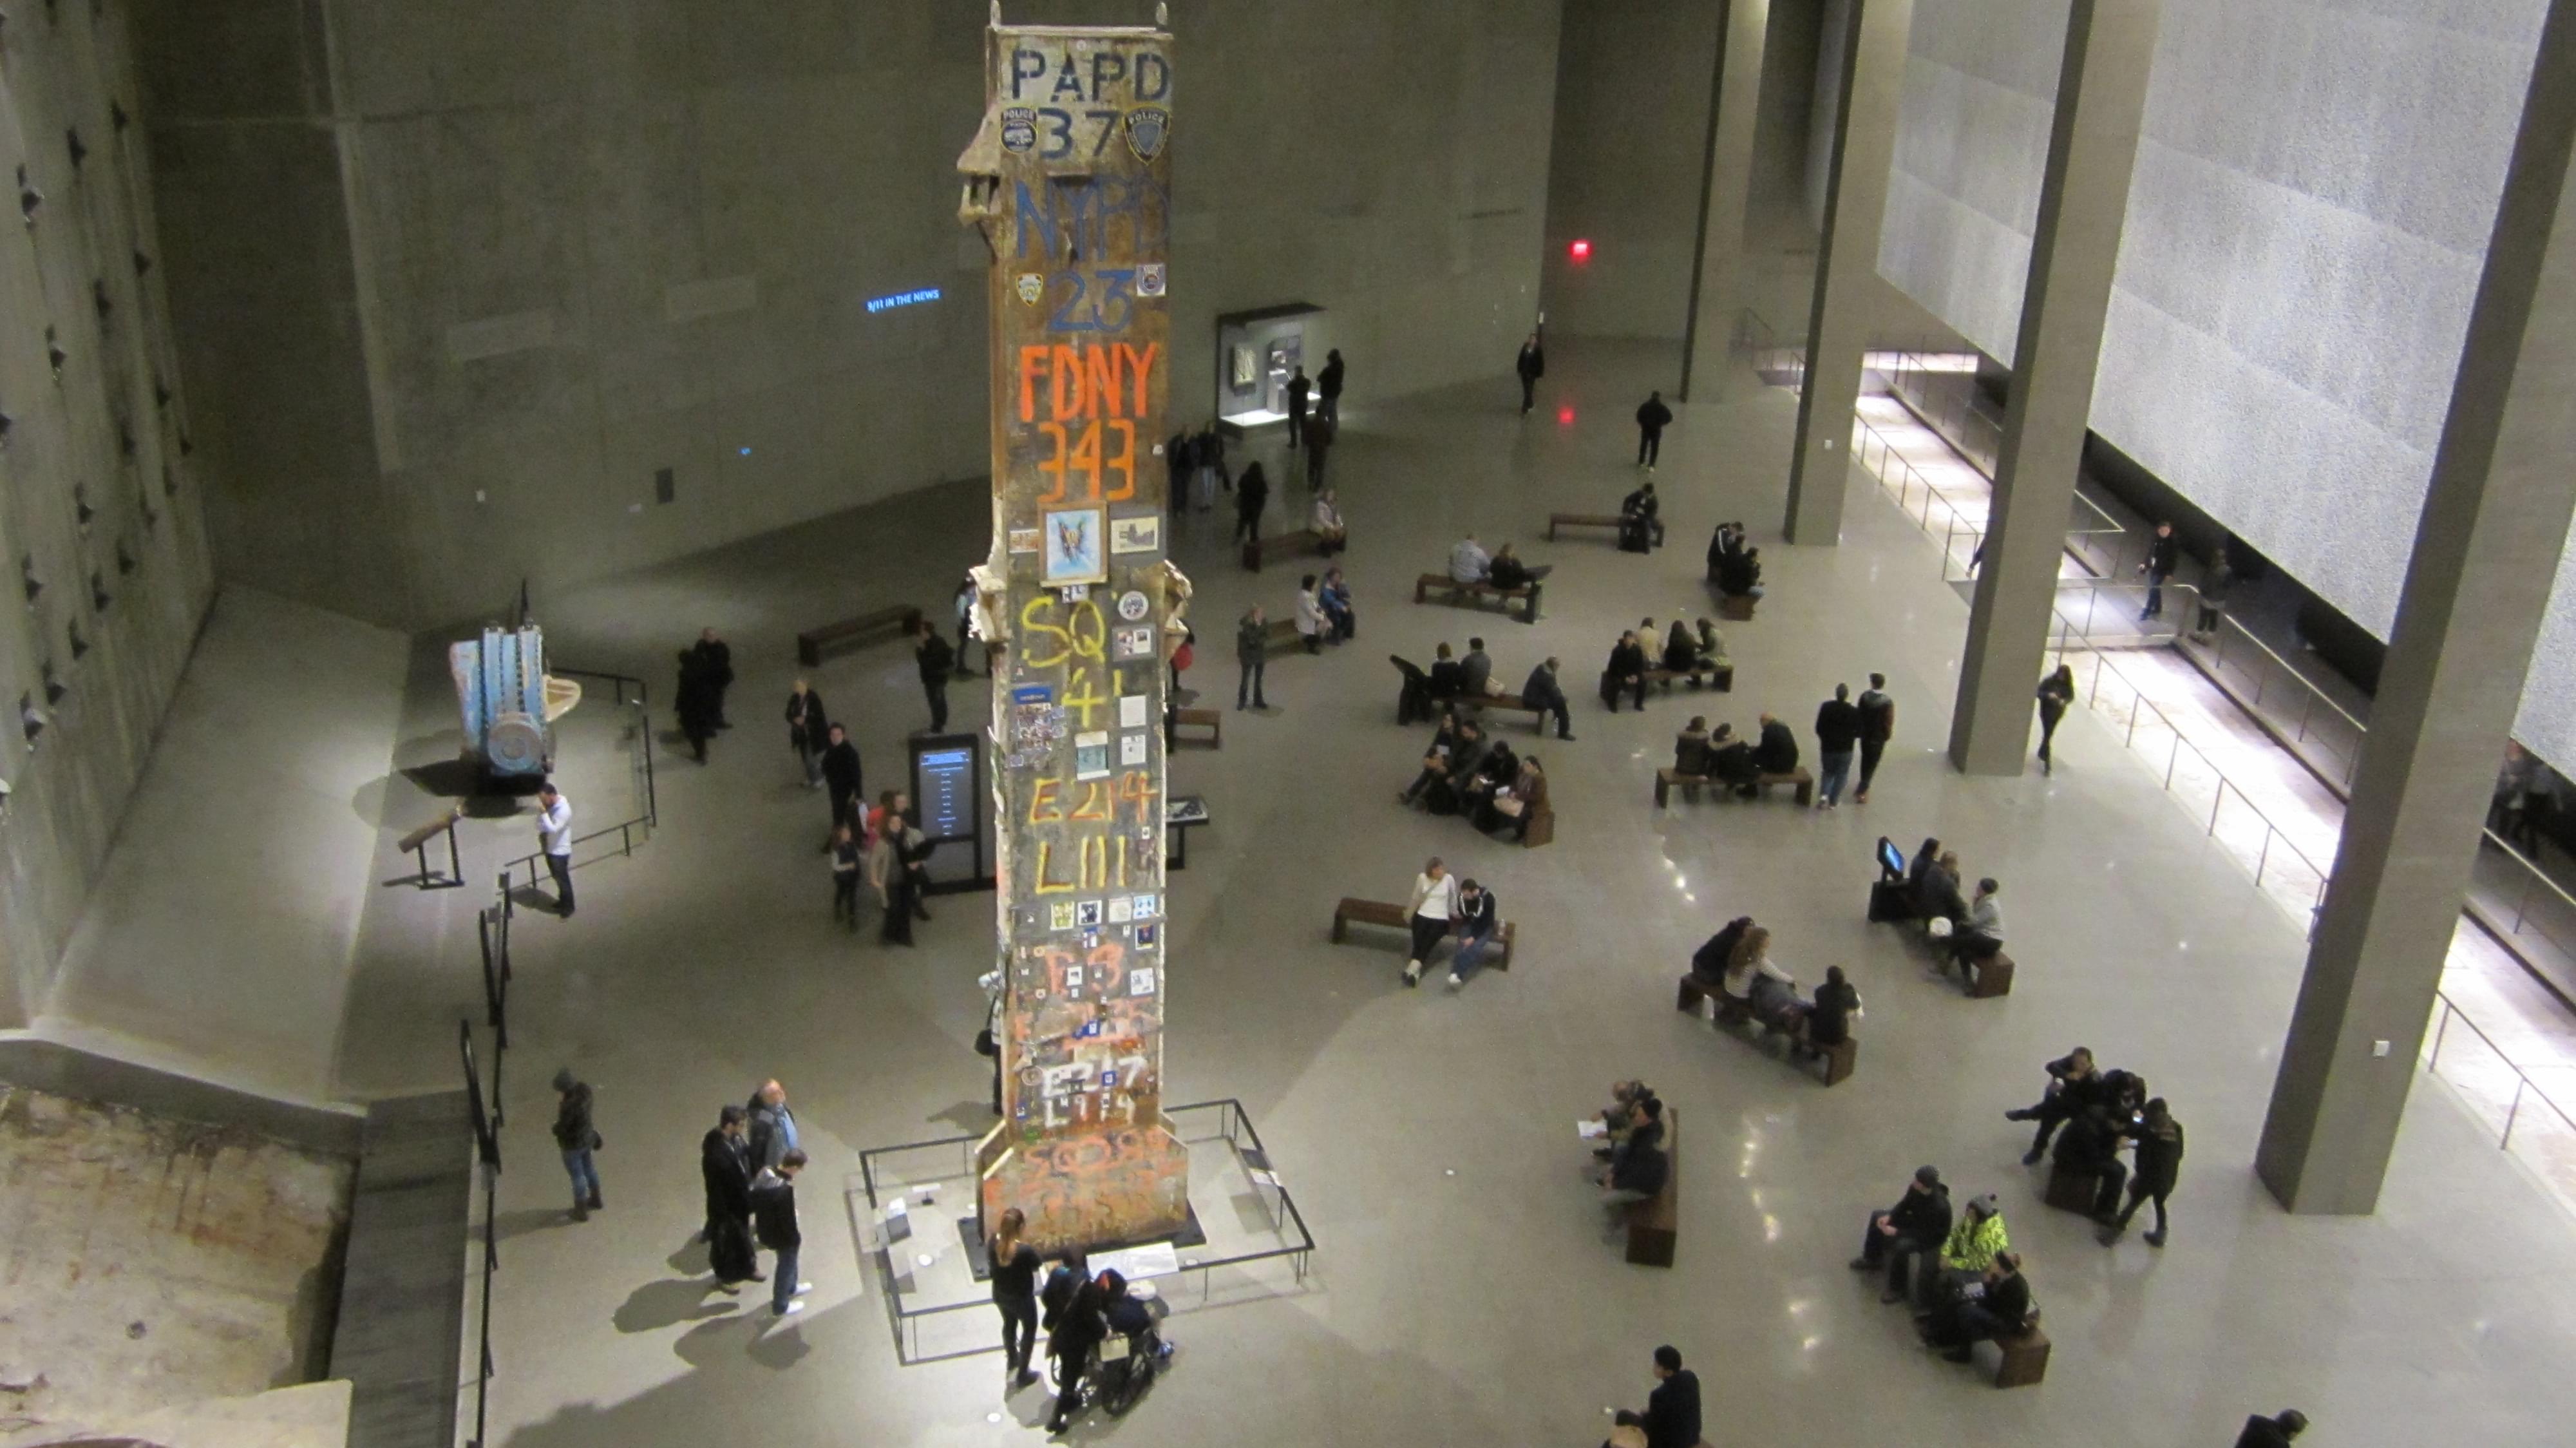 Last Column at 911 museum